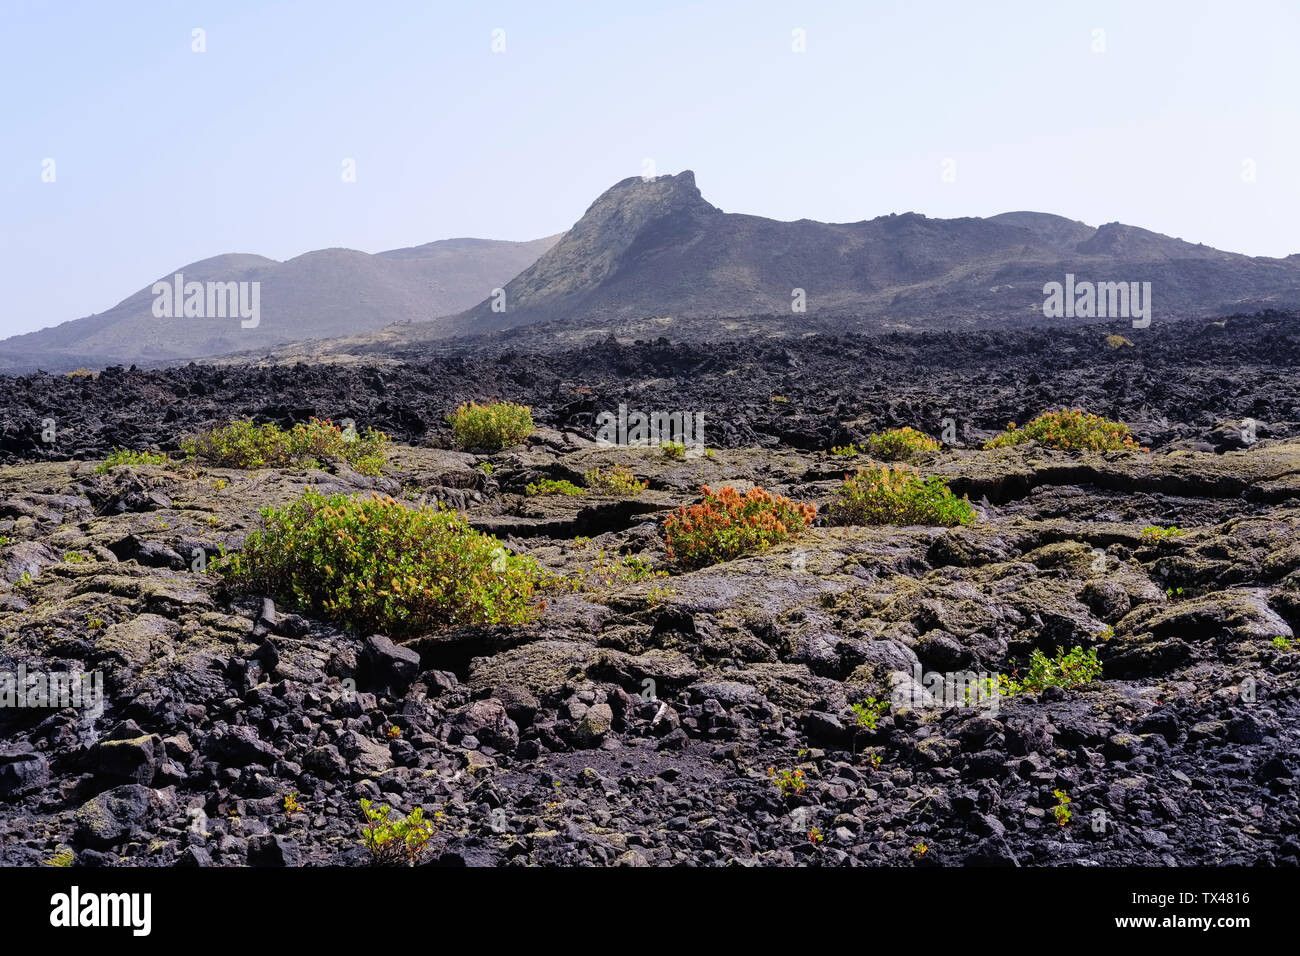 Spain, Canary Islands, Lanzarote, Los Volcanes Nature Park, Caldera Santa Catalina, Canary Islands sorrel Stock Photo